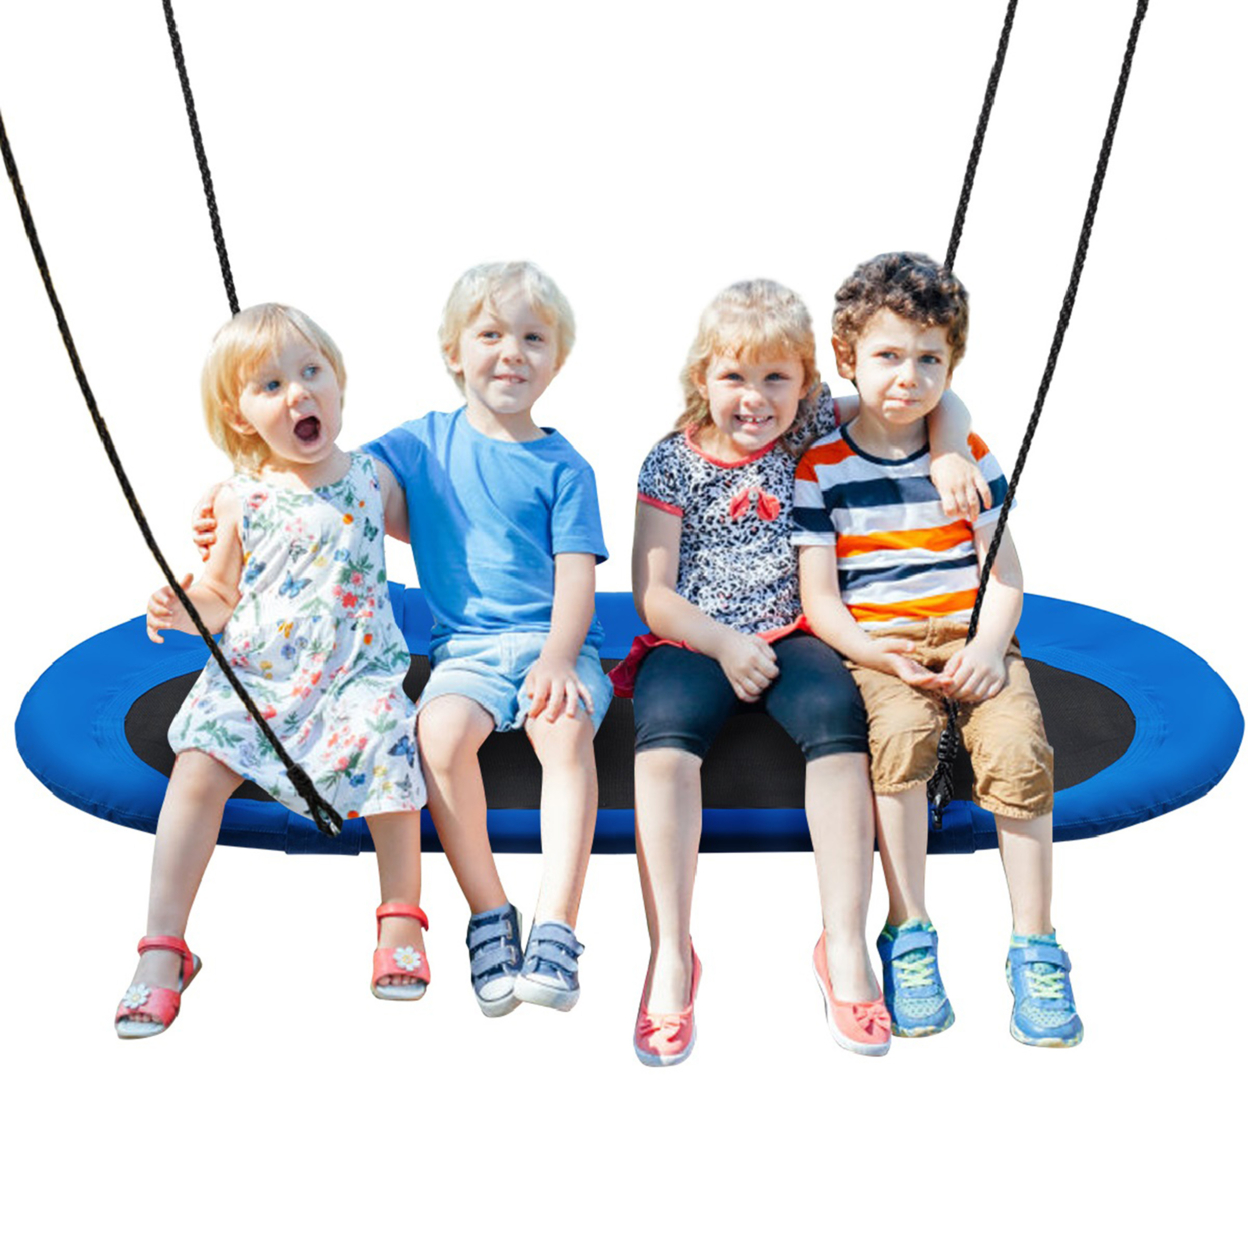 60'' Saucer Tree Swing Surf Outdoor Adjustable Kids Giant Oval Platform Swing Set - Blue